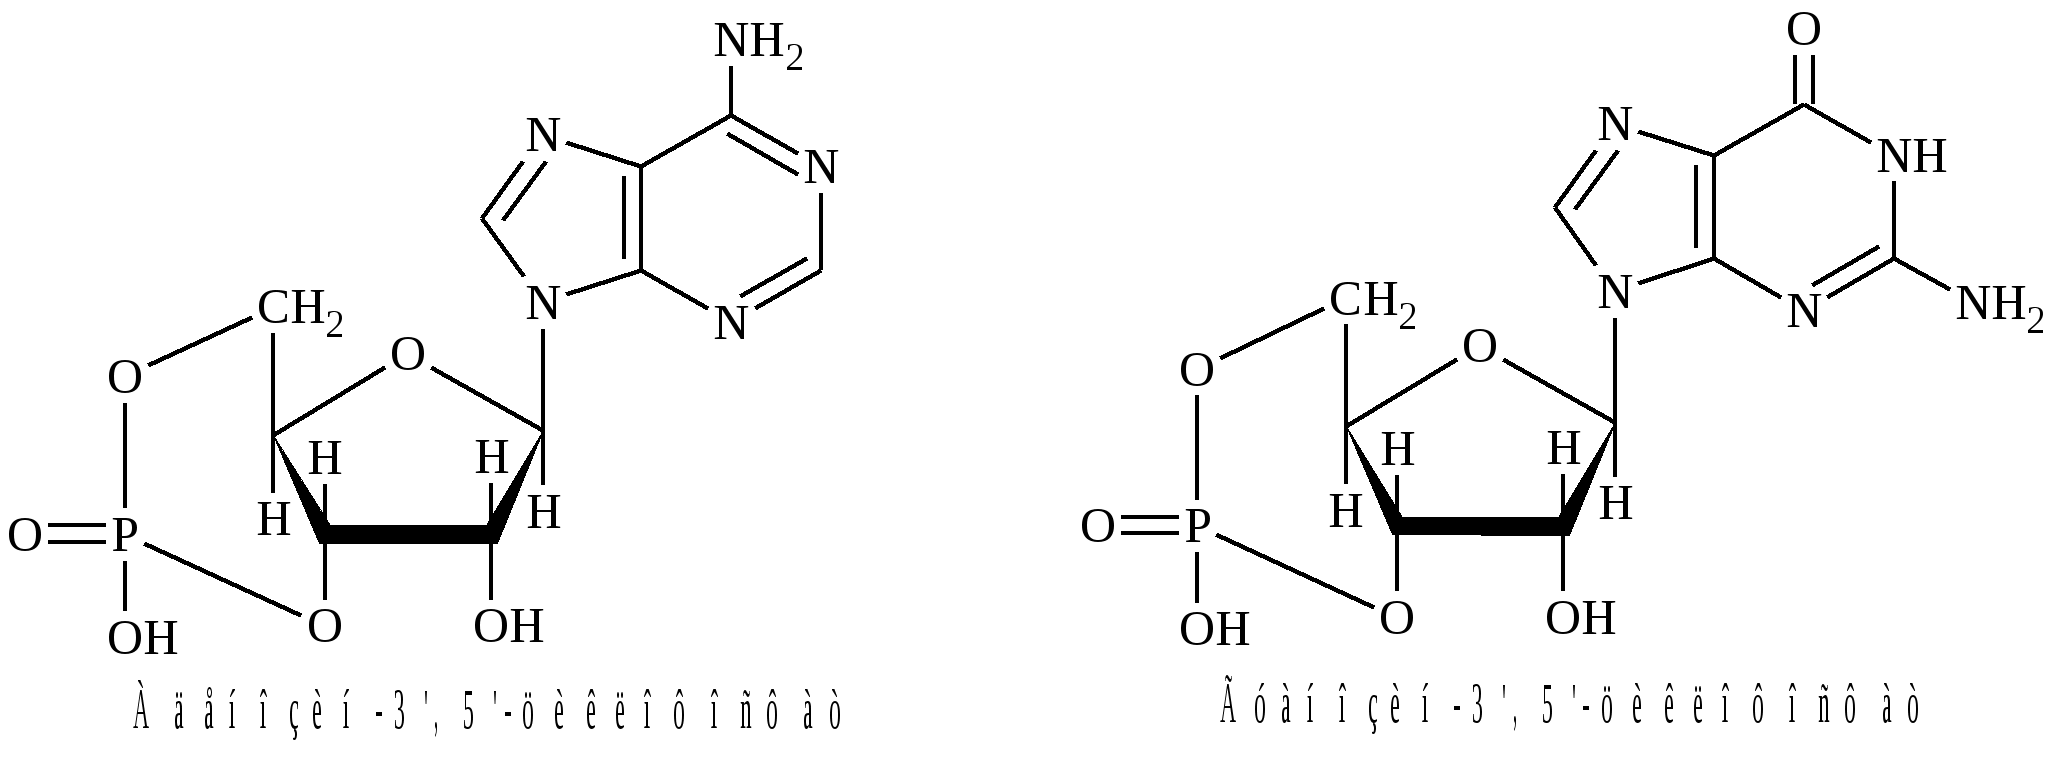 003 05. Дезоксигуанозин 3 5 циклофосфат. Аденозин 3 5 циклофосфат формула. Гидролиз тимидин 3-5 циклофосфата. Аденозин-3’,5’-циклофосфата..